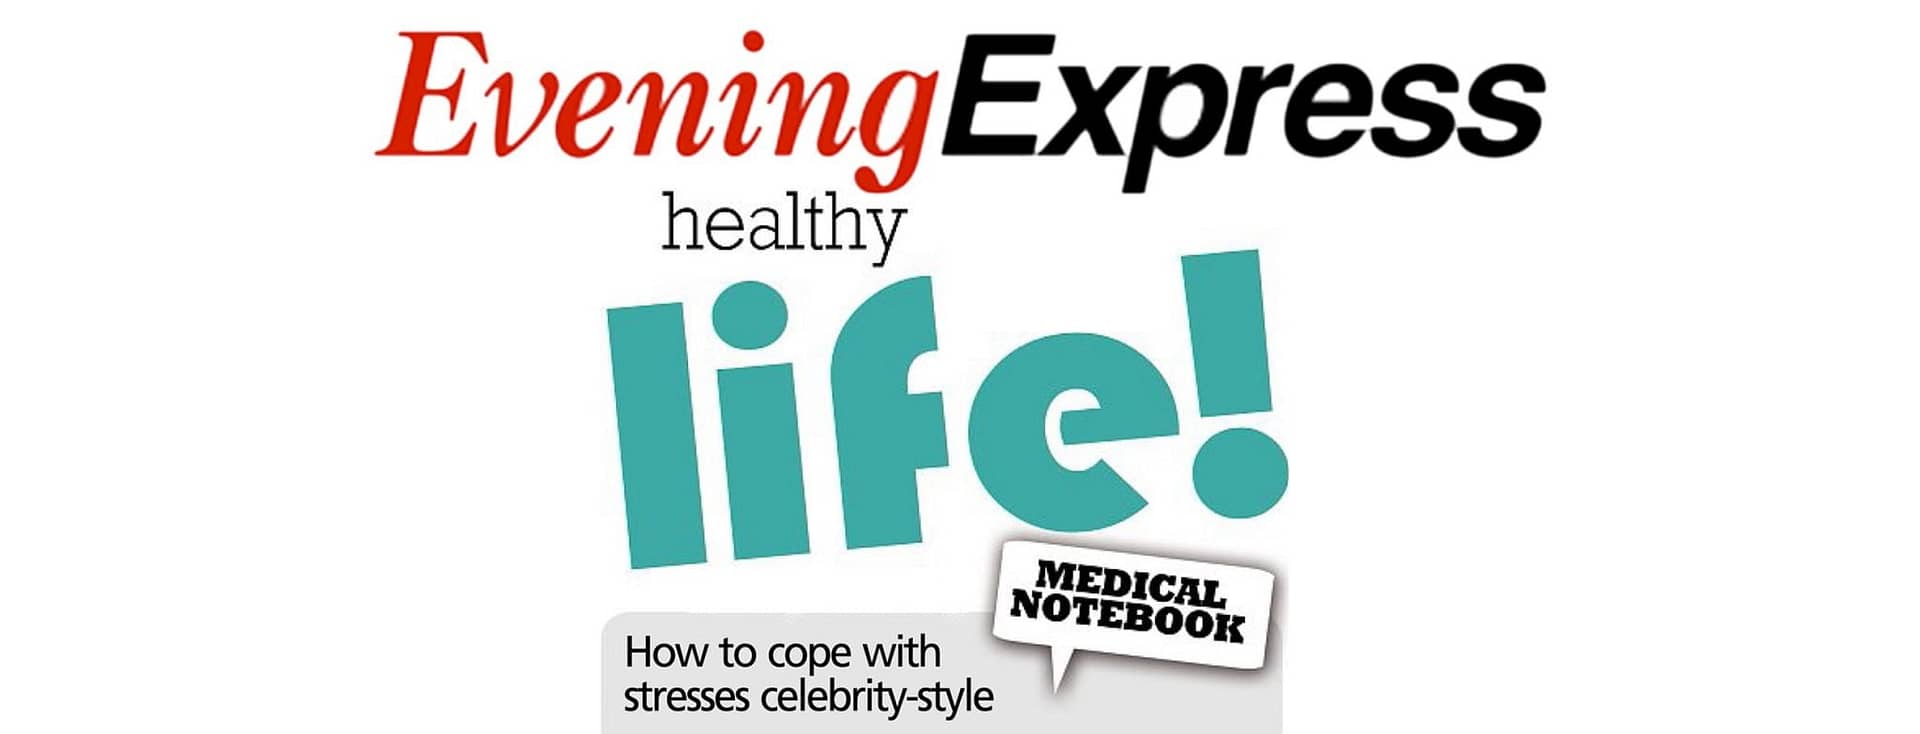 Aberdeen Evening Express Healthy Life